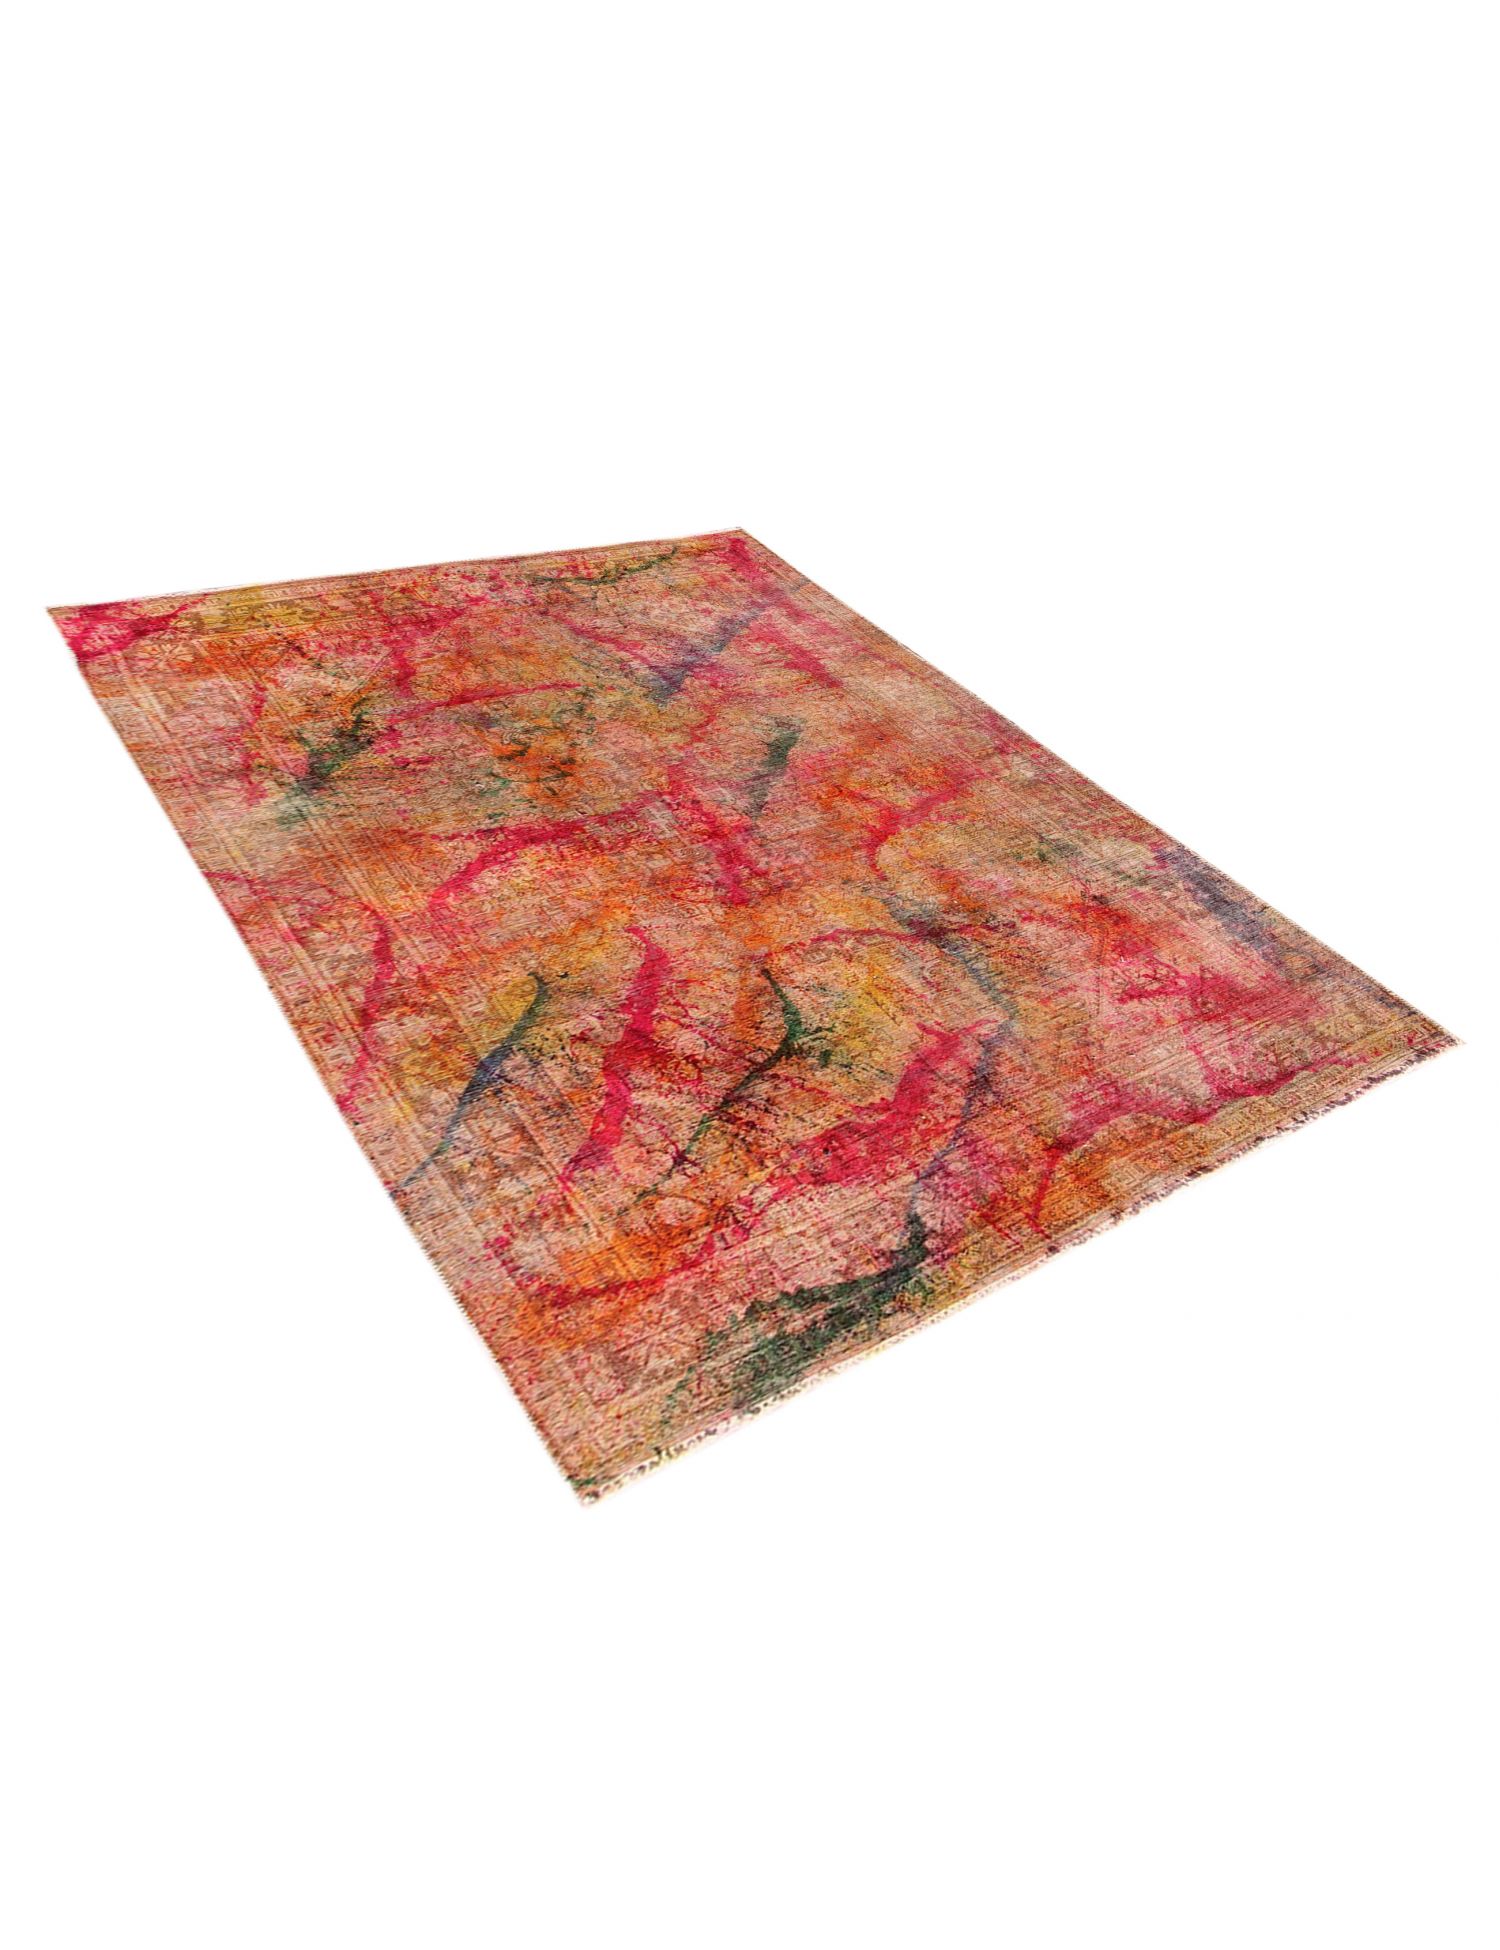 Persischer Vintage Teppich  mehrfarbig <br/>295 x 200 cm